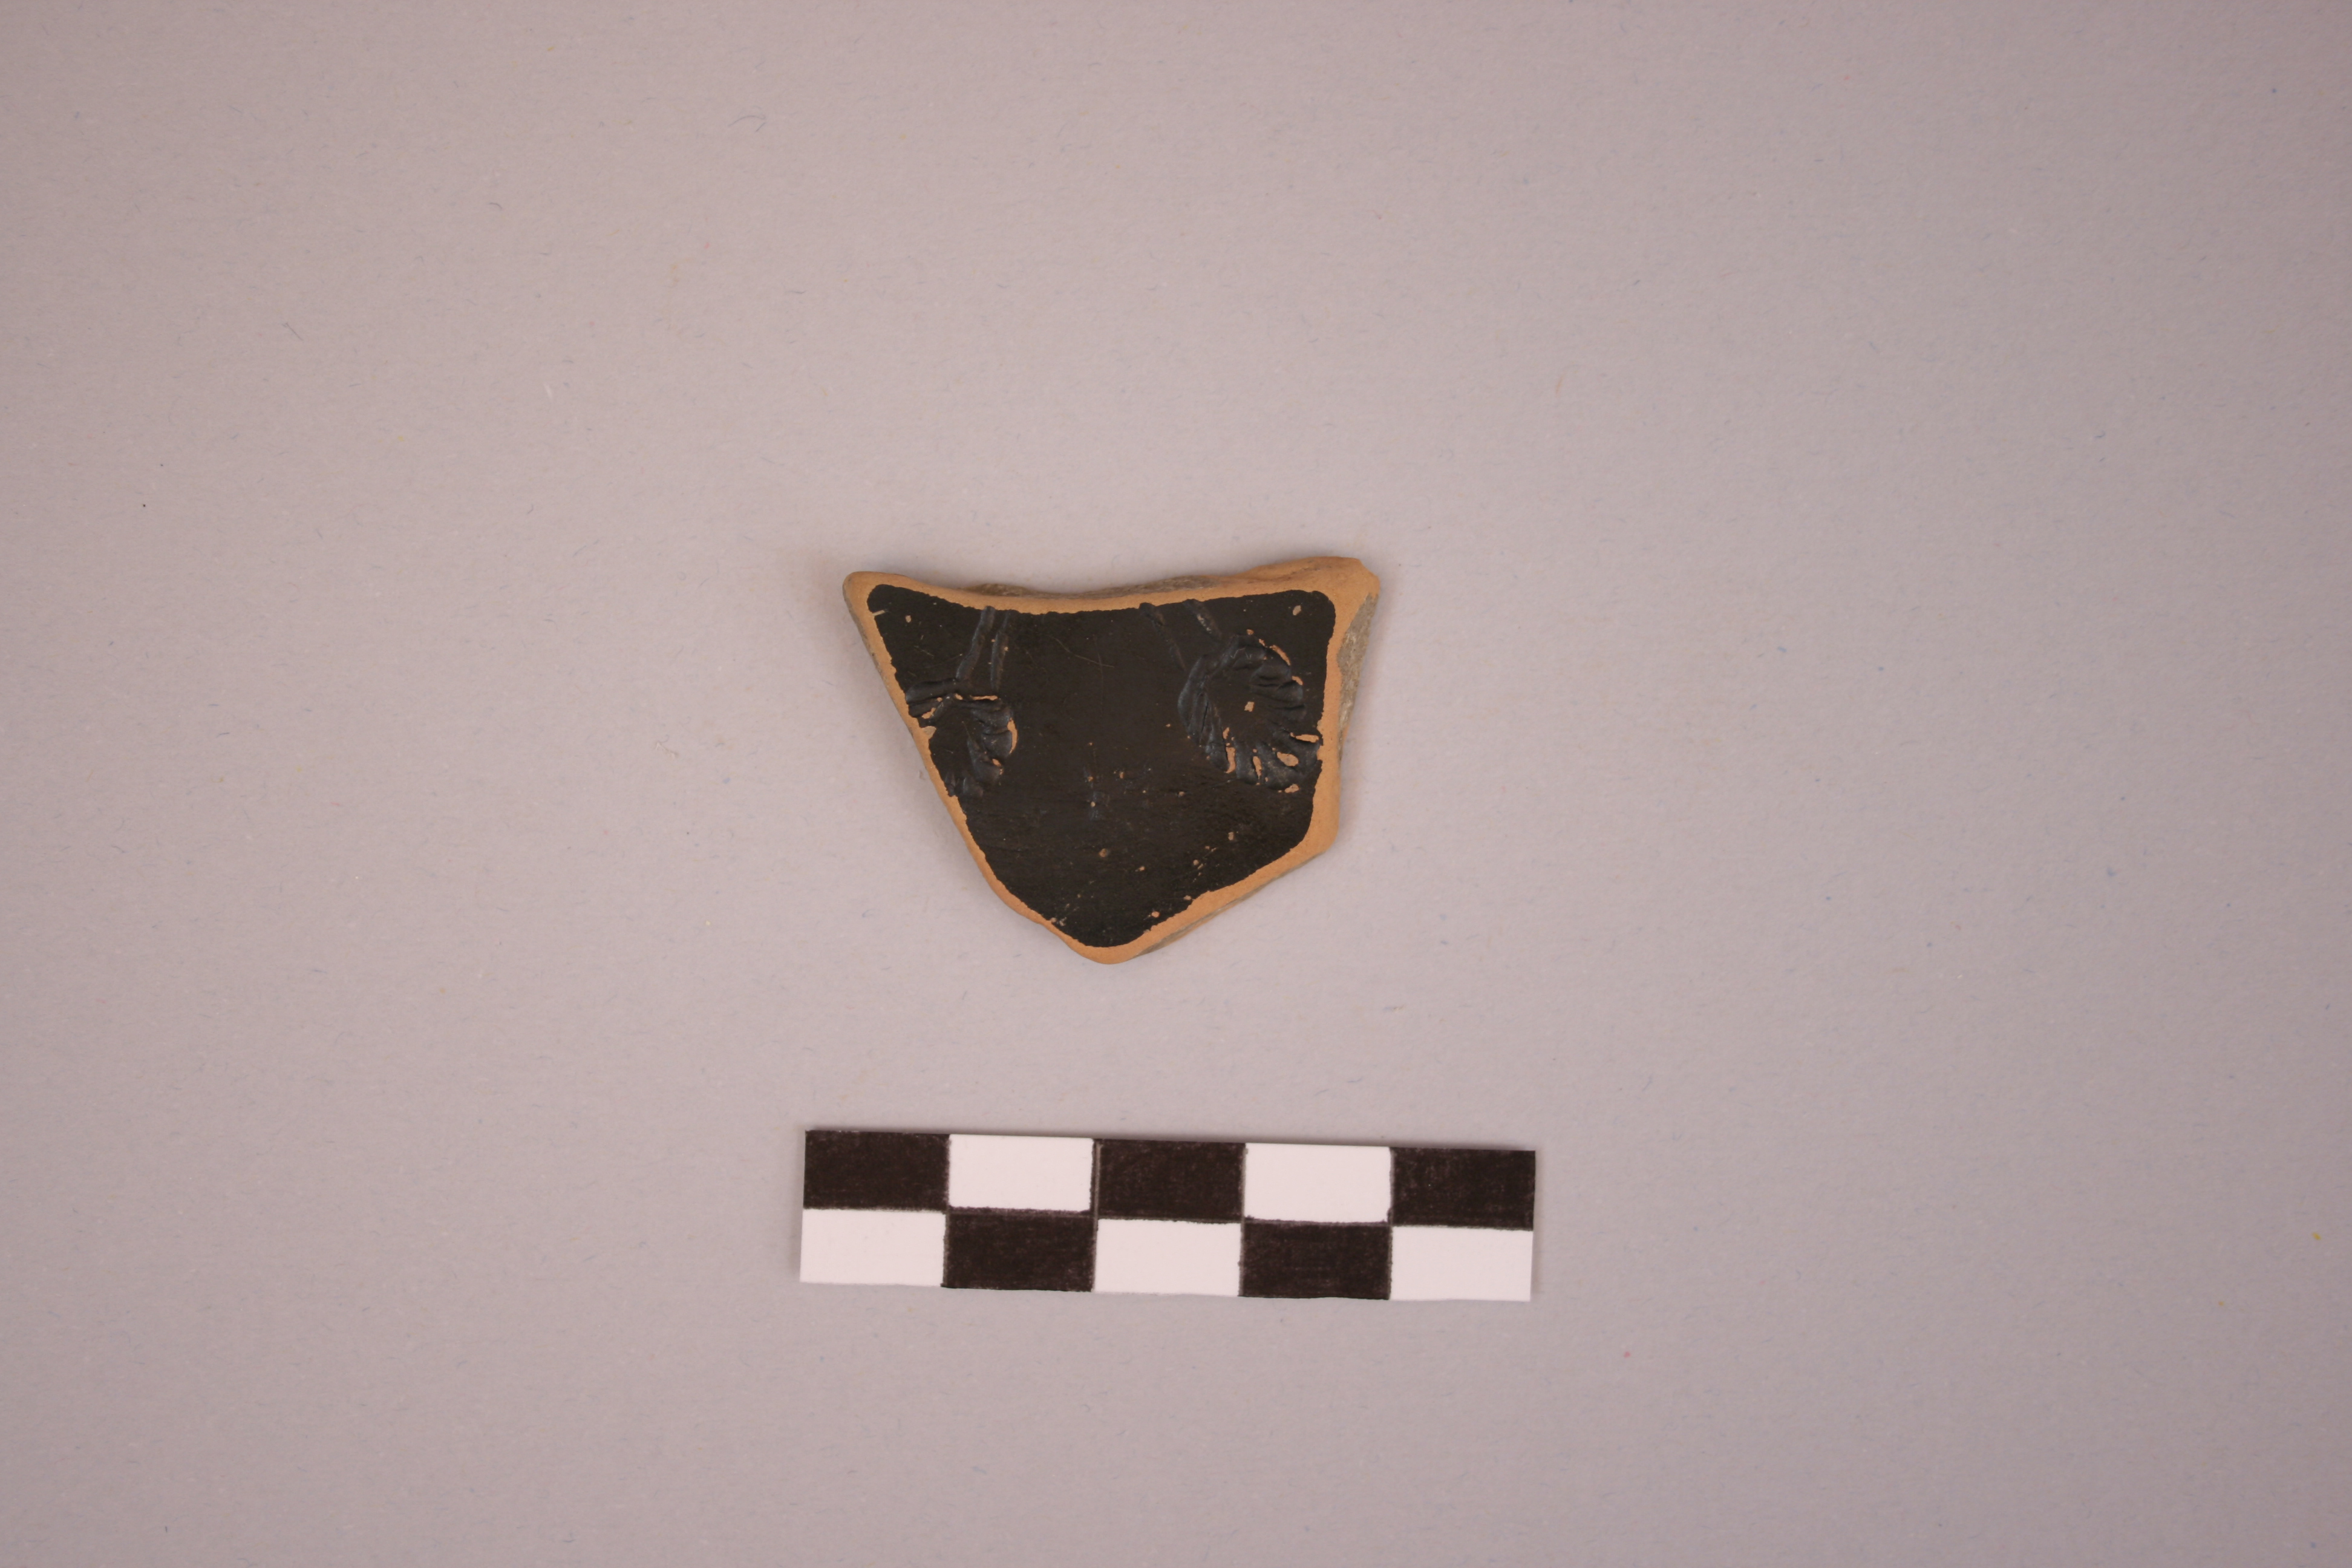 materiale proveniente da ricognizione (ceramica) (Età punico-romana)